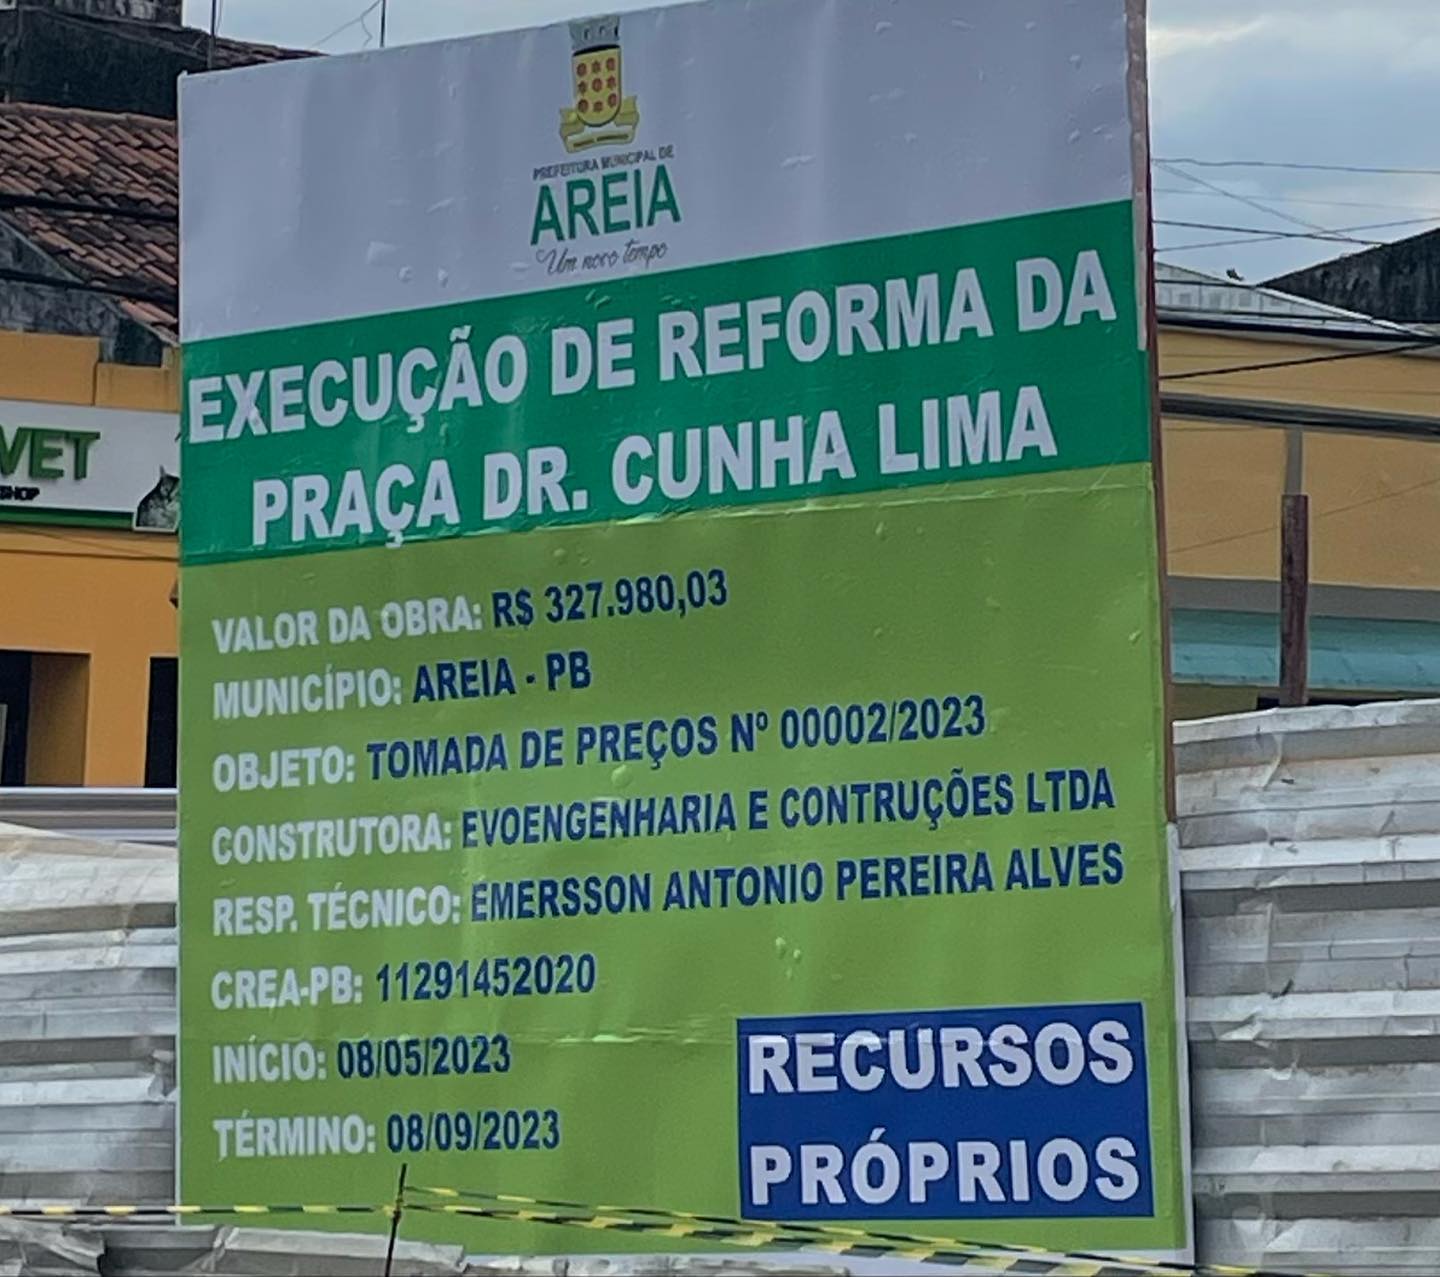 PMA inicia a reforma da Praça Dr. Cunha Lima no centro da cidade de Areia